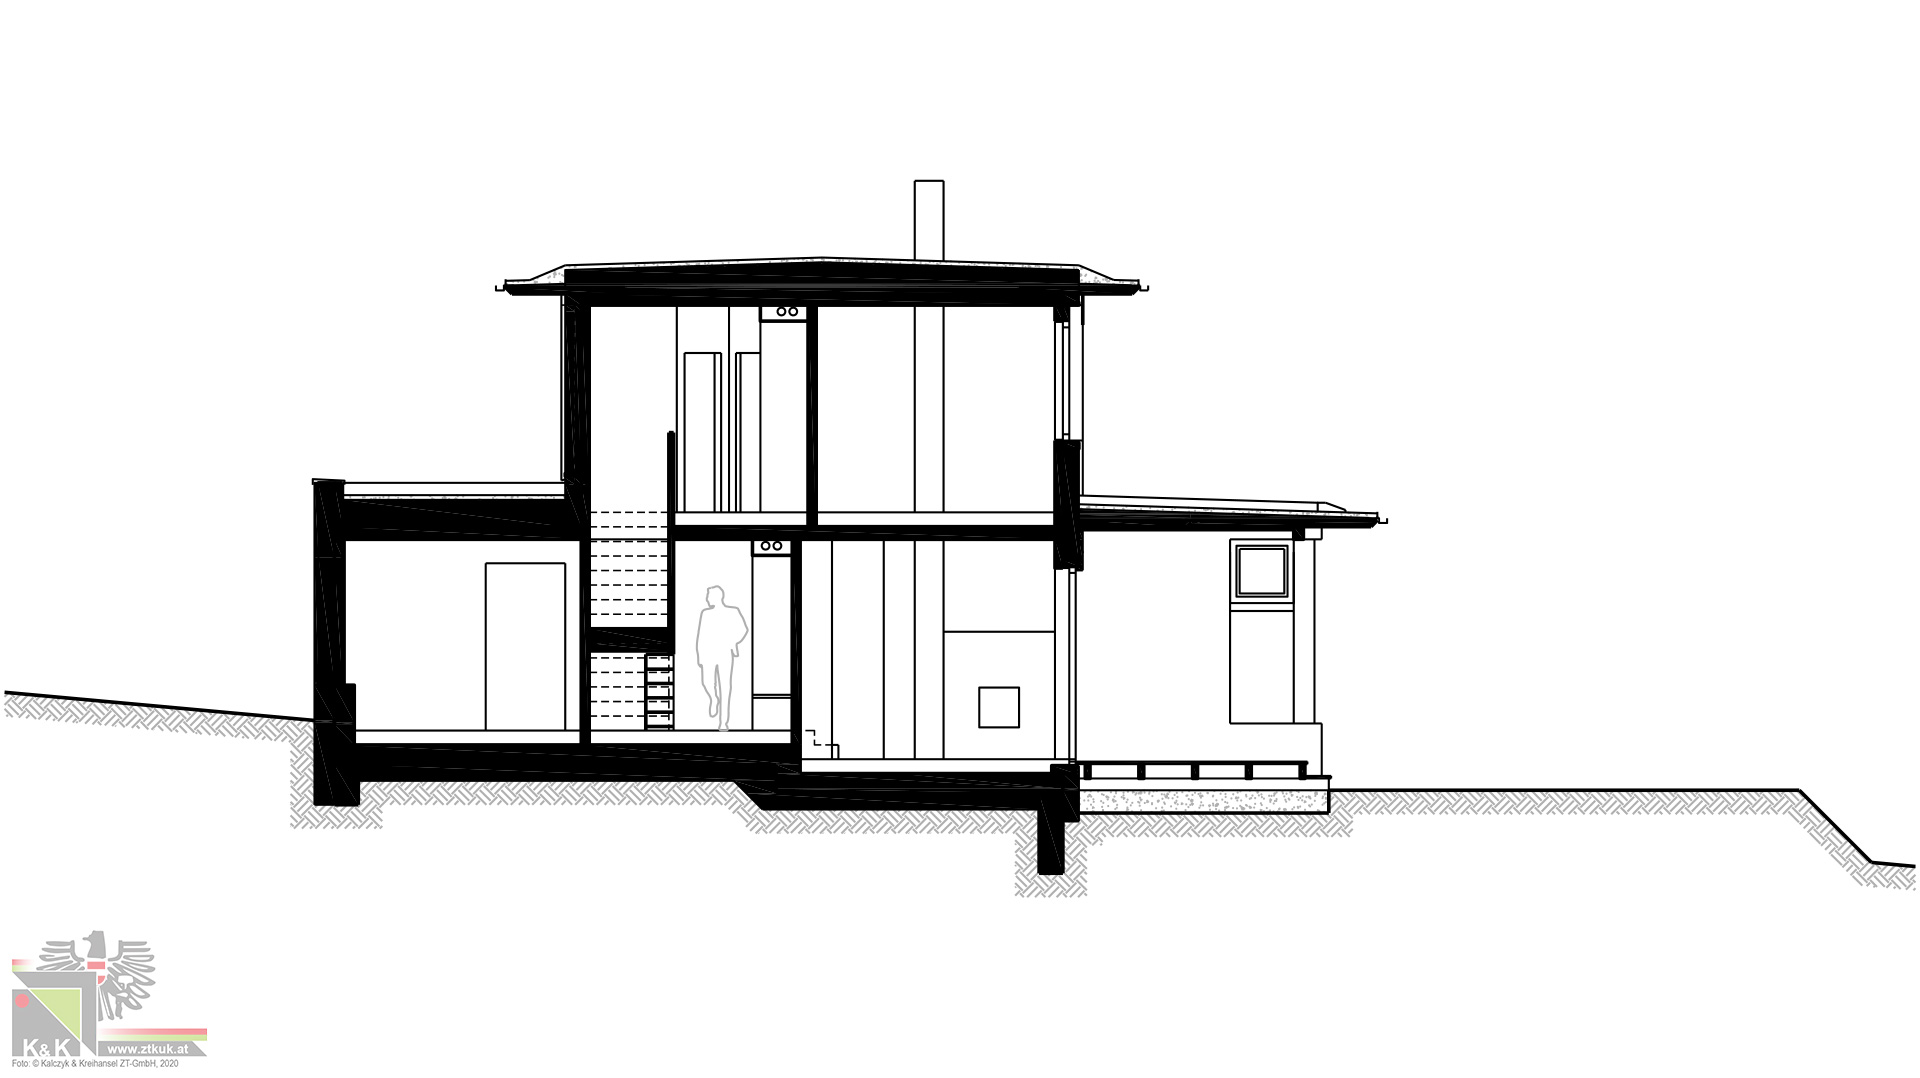 Einfamilienhaus in Holsbauweise - Systemschnitt